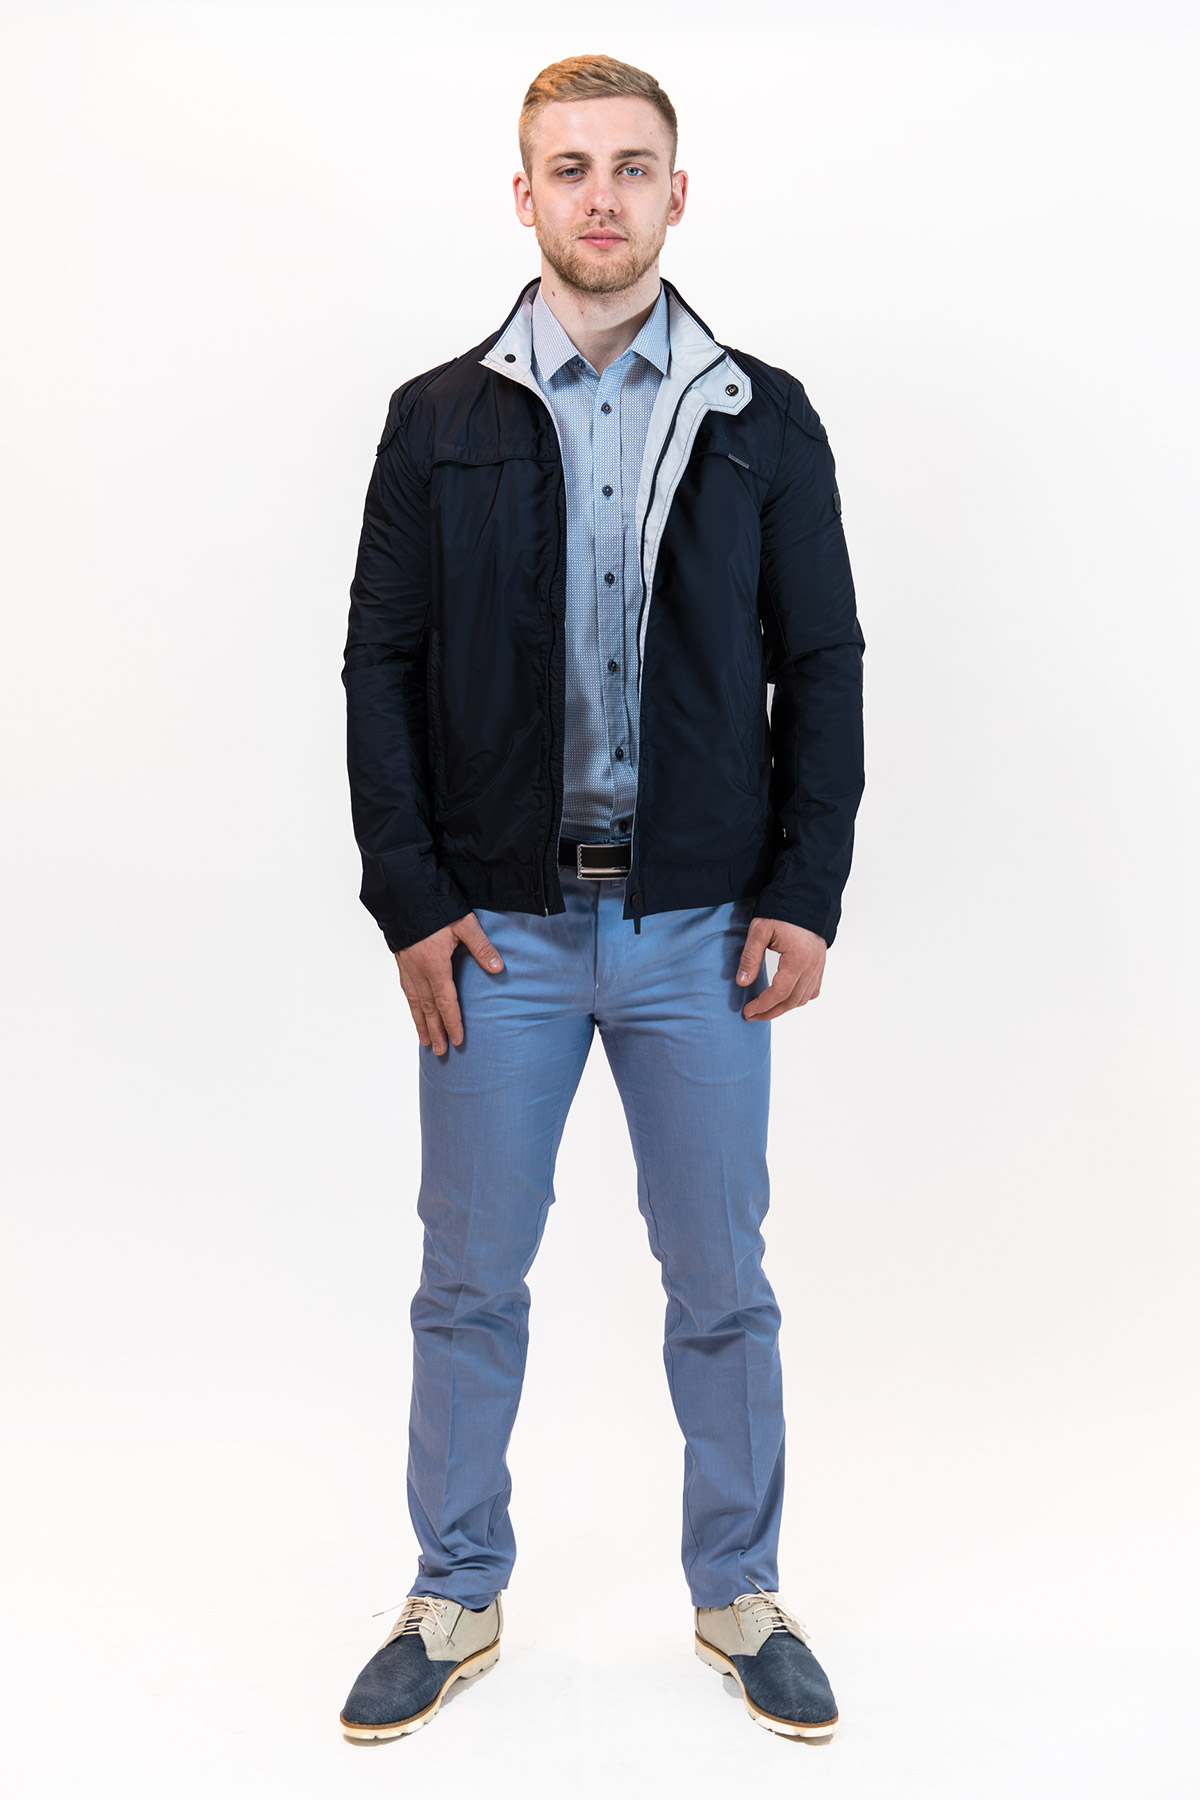 фото Демисезонная куртка мужская PLAXA арт. 5308-01 Цвет : т.синий со светлыми вставками по воротнику